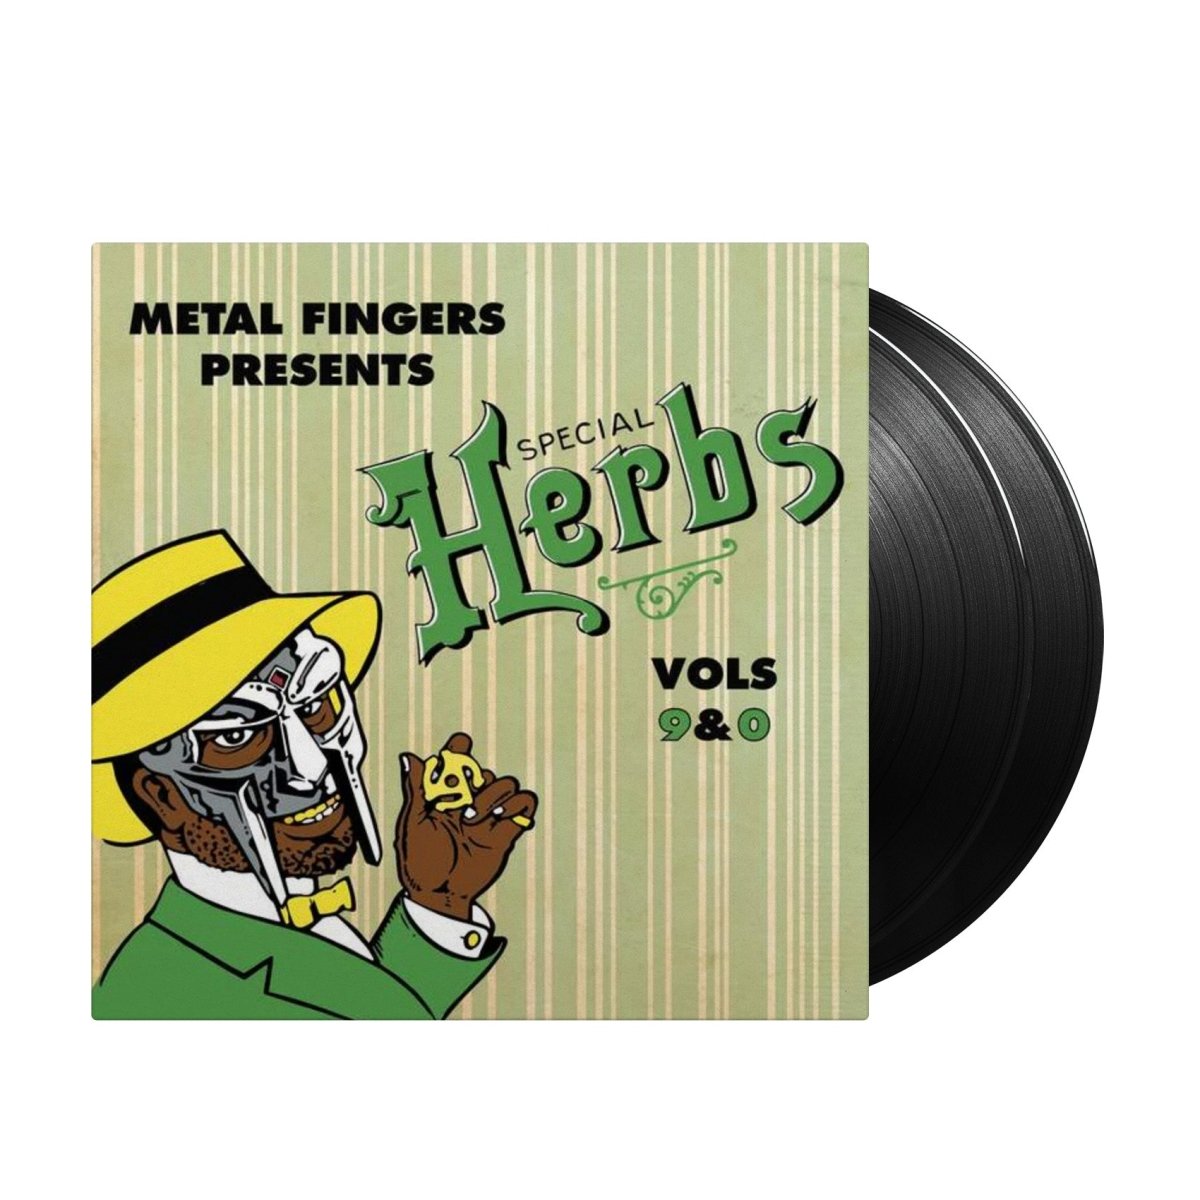 MF Doom - Special Herbs Vol. 9 & 0 - Inner Ocean Records